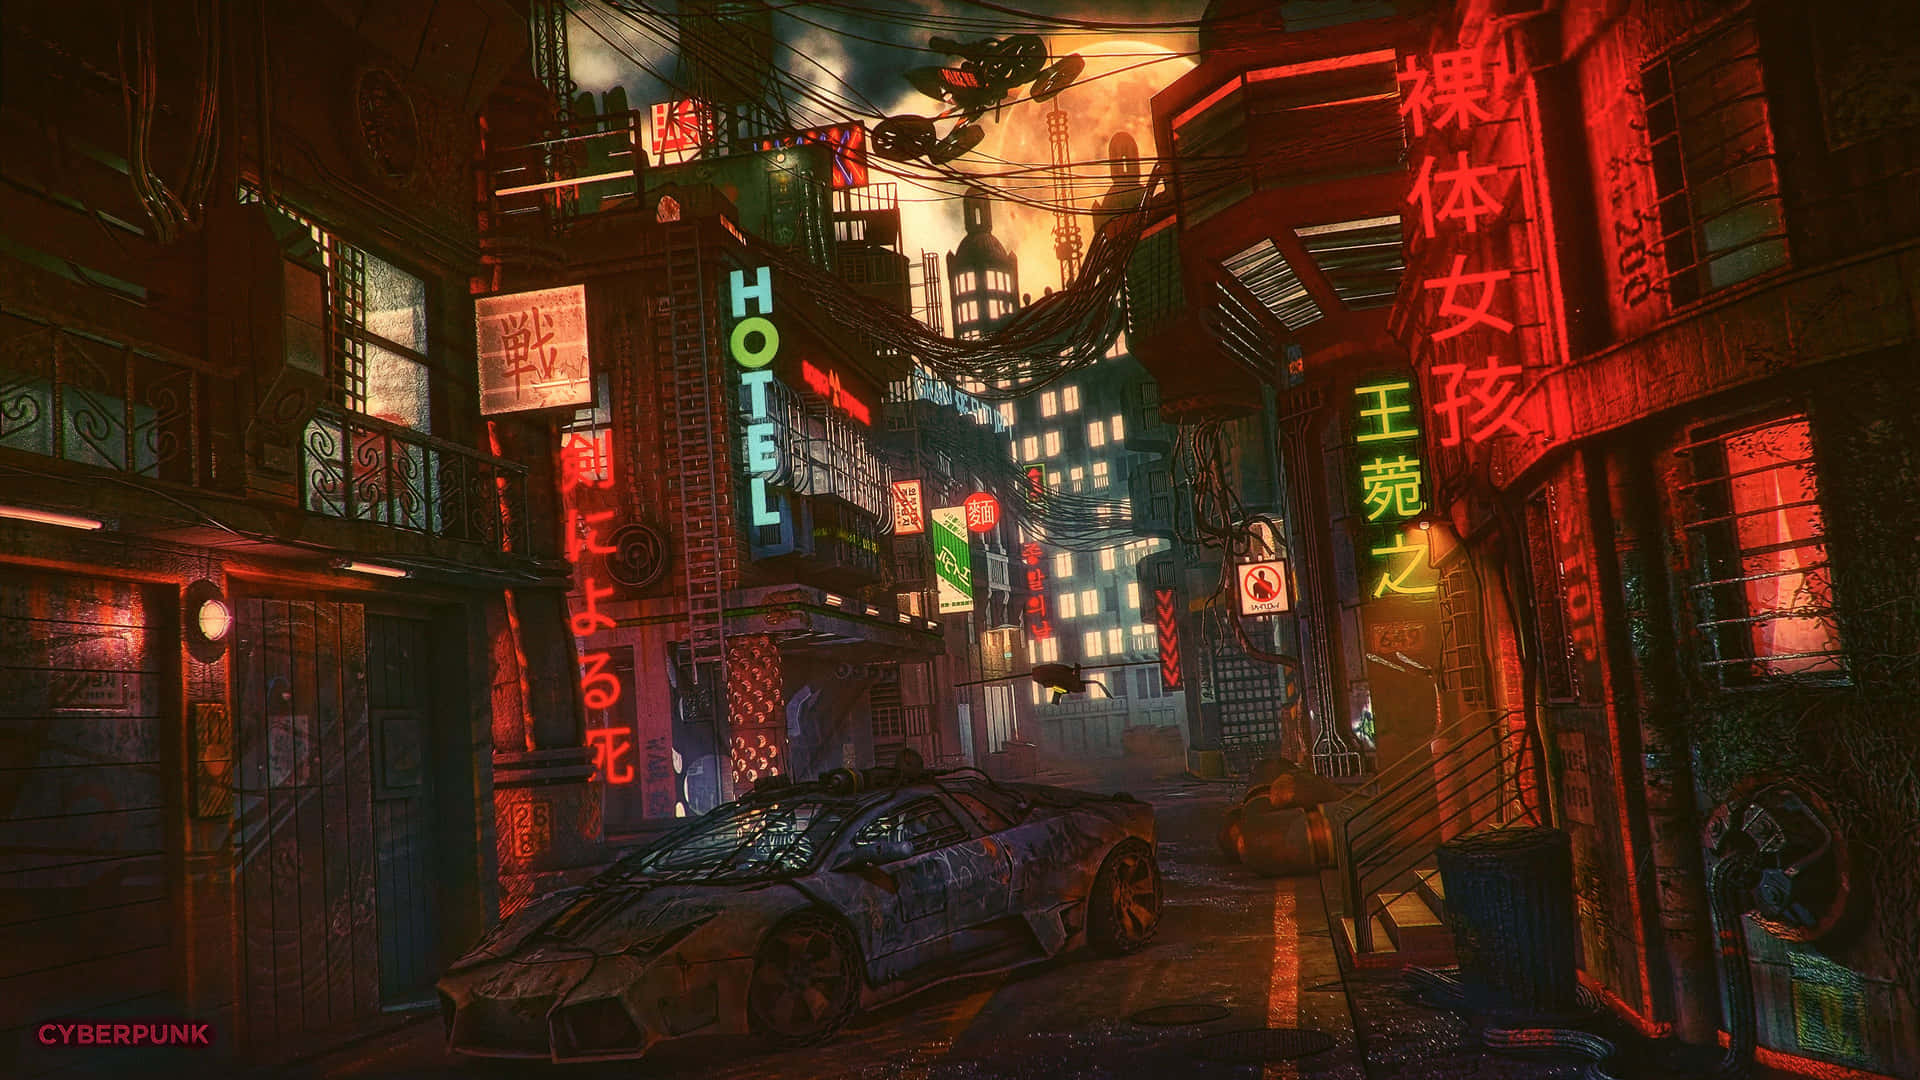 Springud I En Funklende Rejse I Cyberpunk Byen